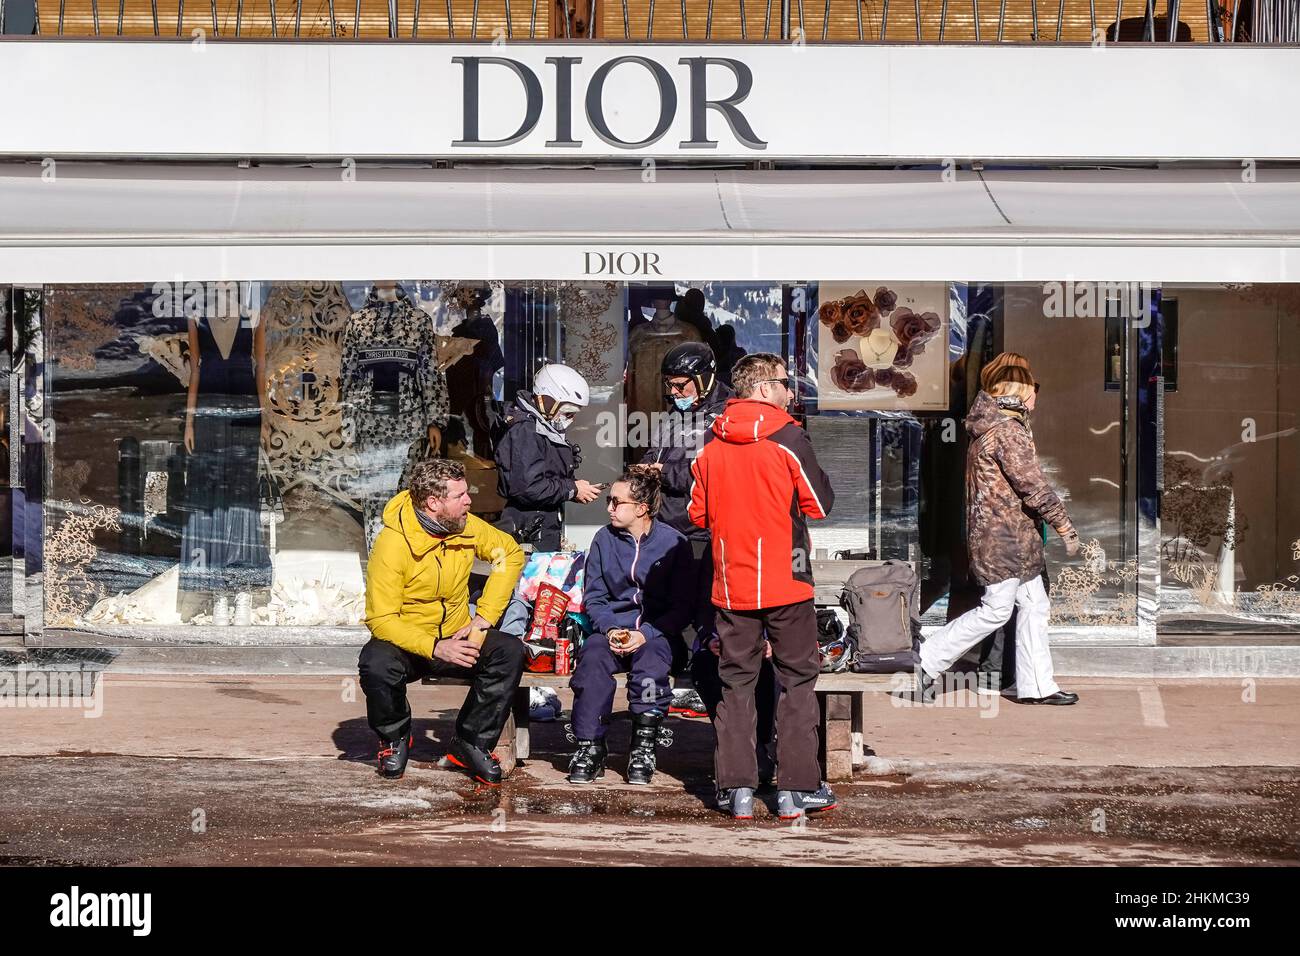 Einkaufsmeile, Dior, Courchevel, Departement Savoie, Frankreich Stock Photo